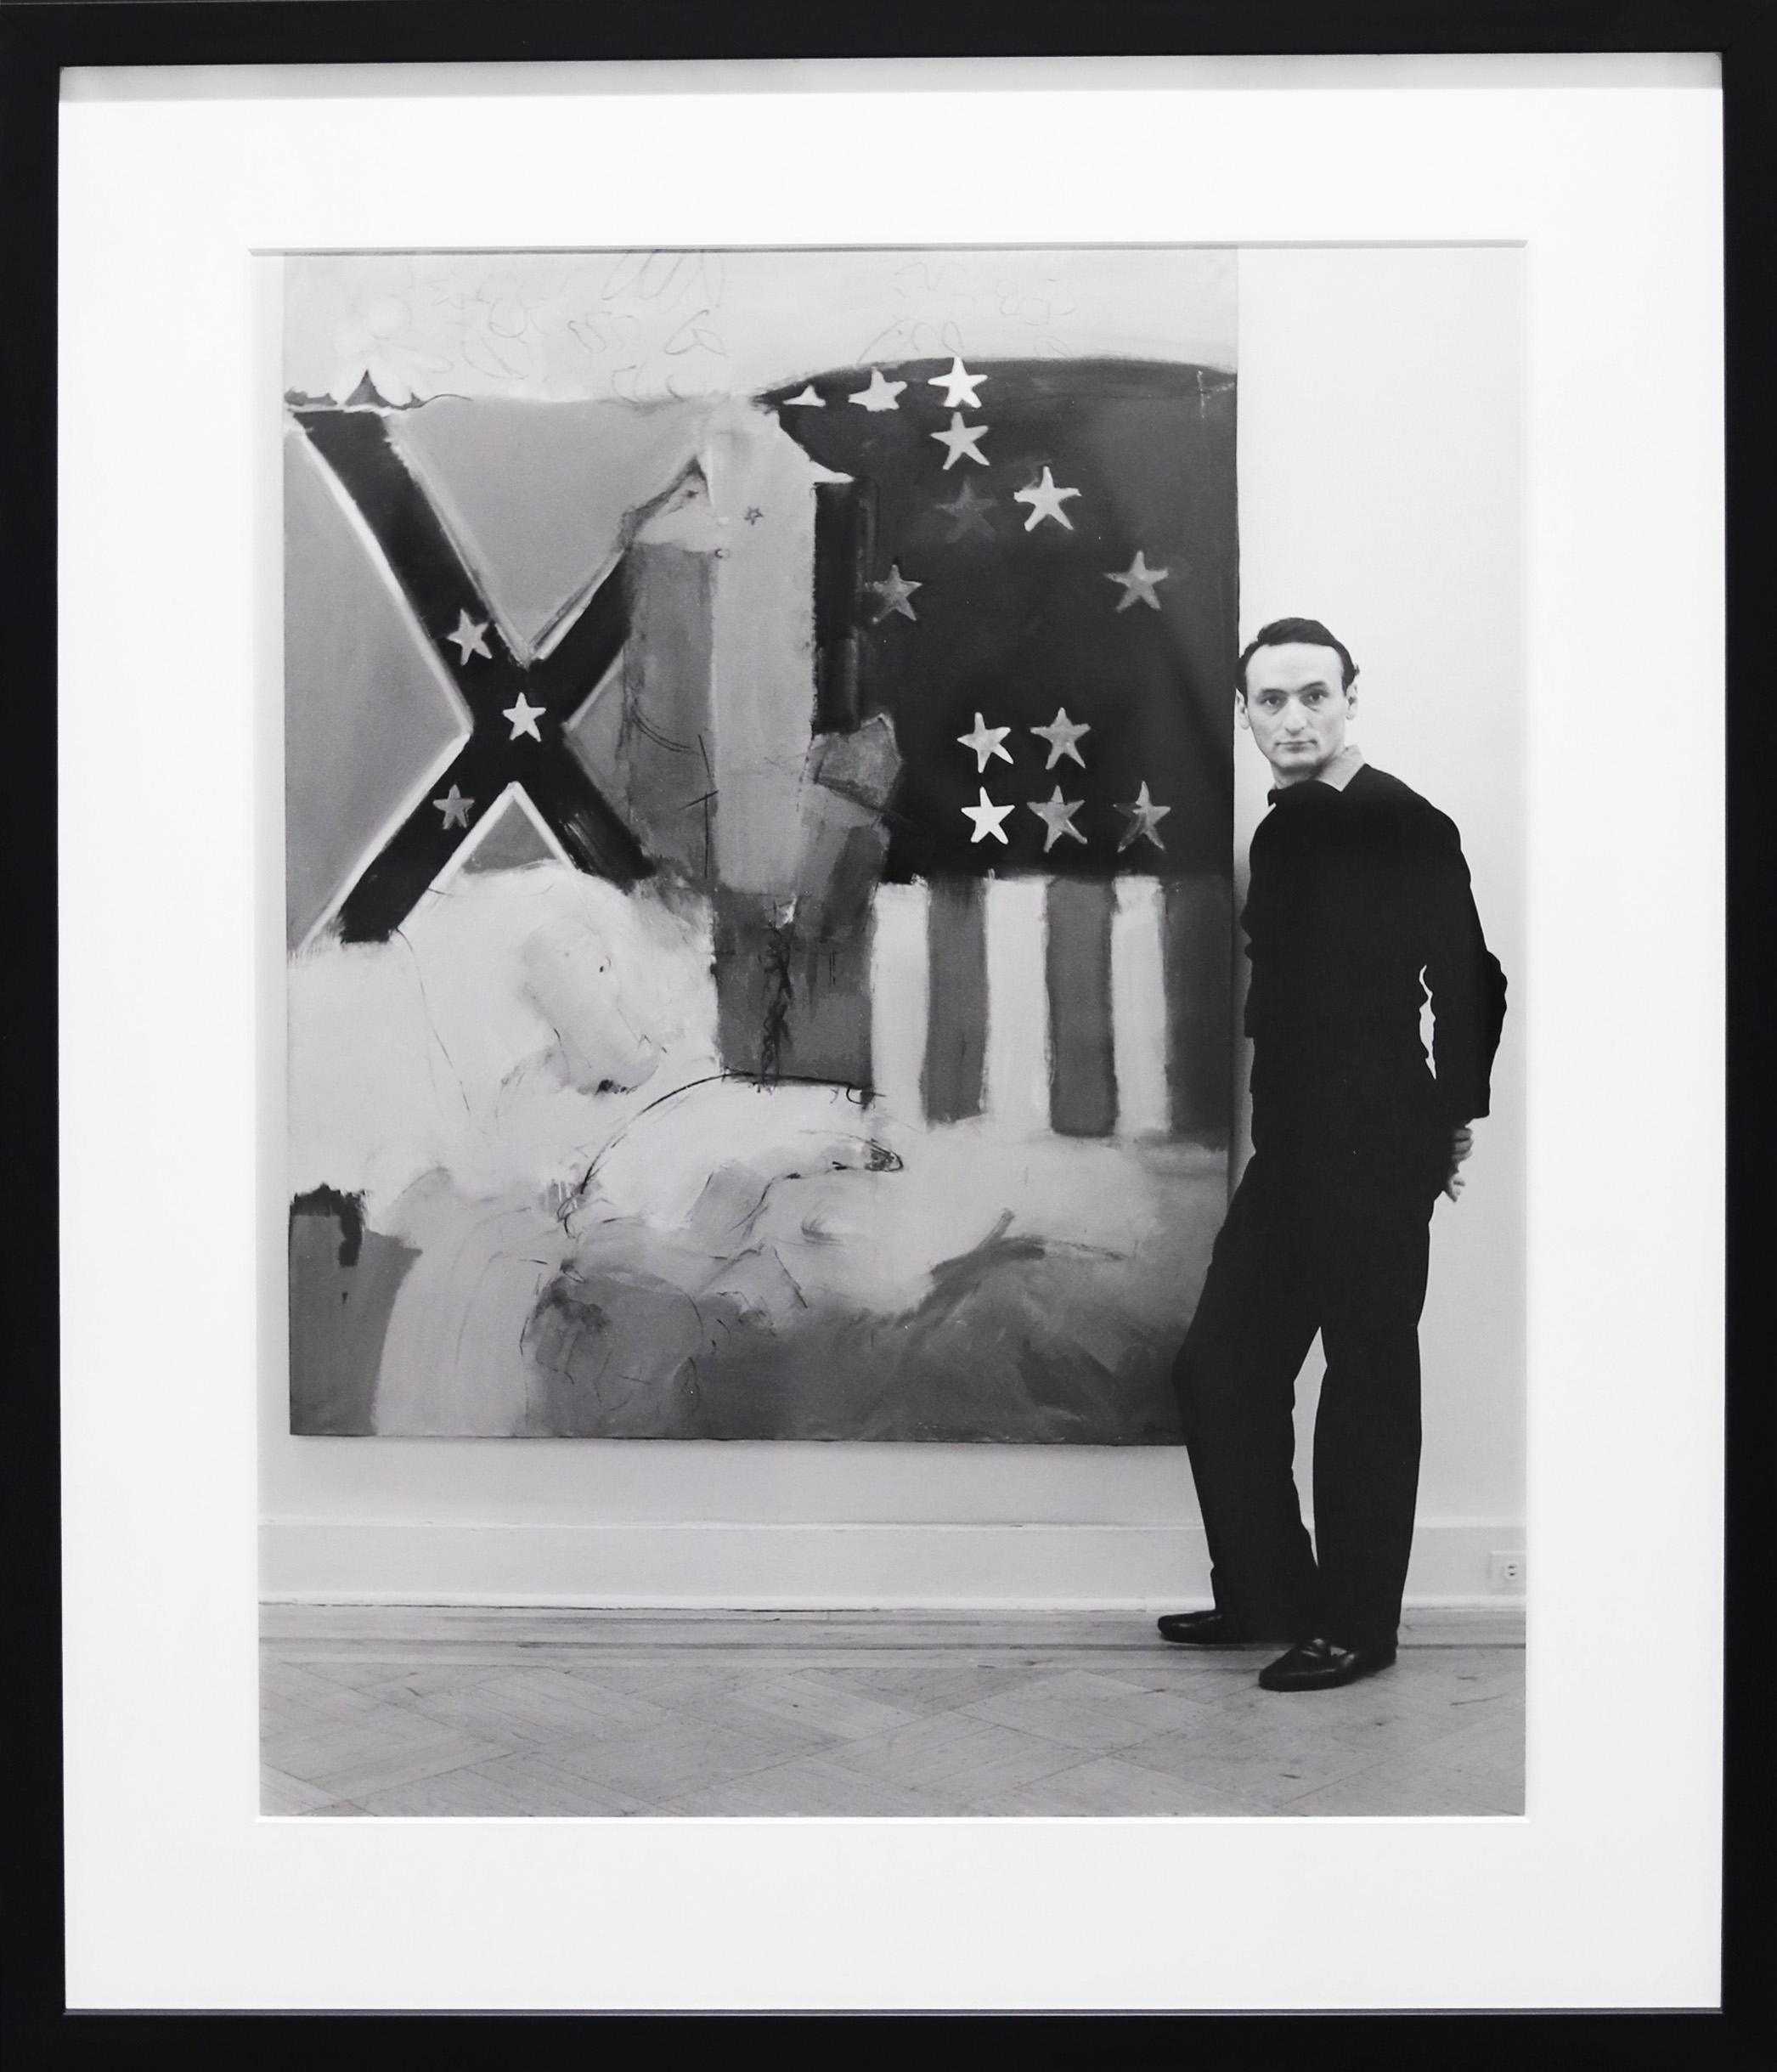 Ben Martin Portrait Photograph – Larry Rivers 1962 Schwarz-Weiß-Nachlassfotografie in limitierter Auflage